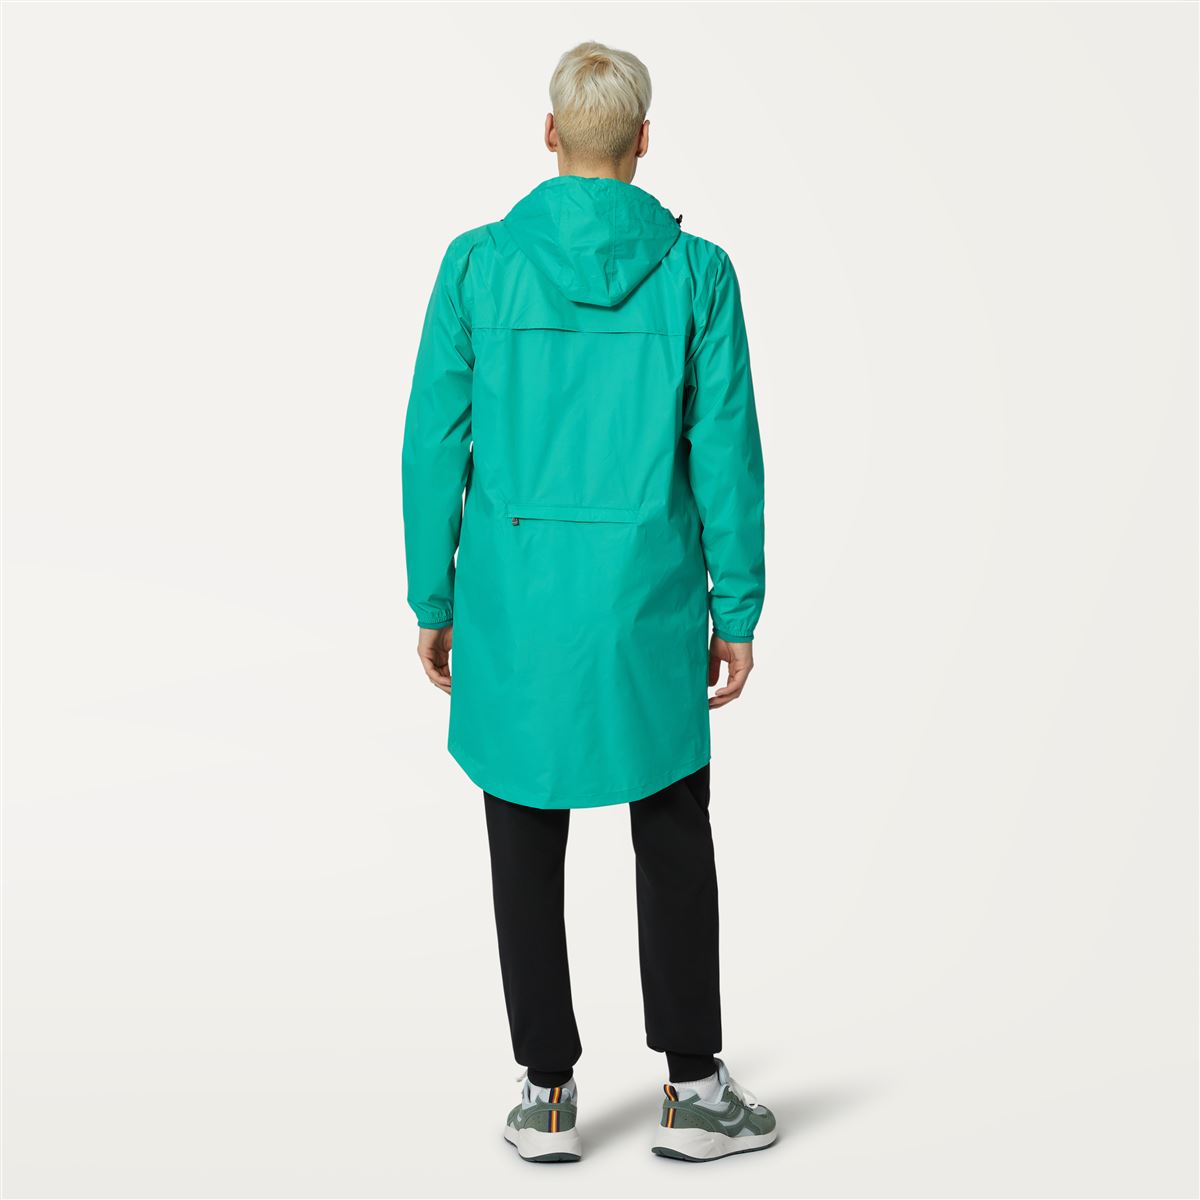 Eiffel - Unisex Waterproof Packable Long Rain Jacket in Green Marine